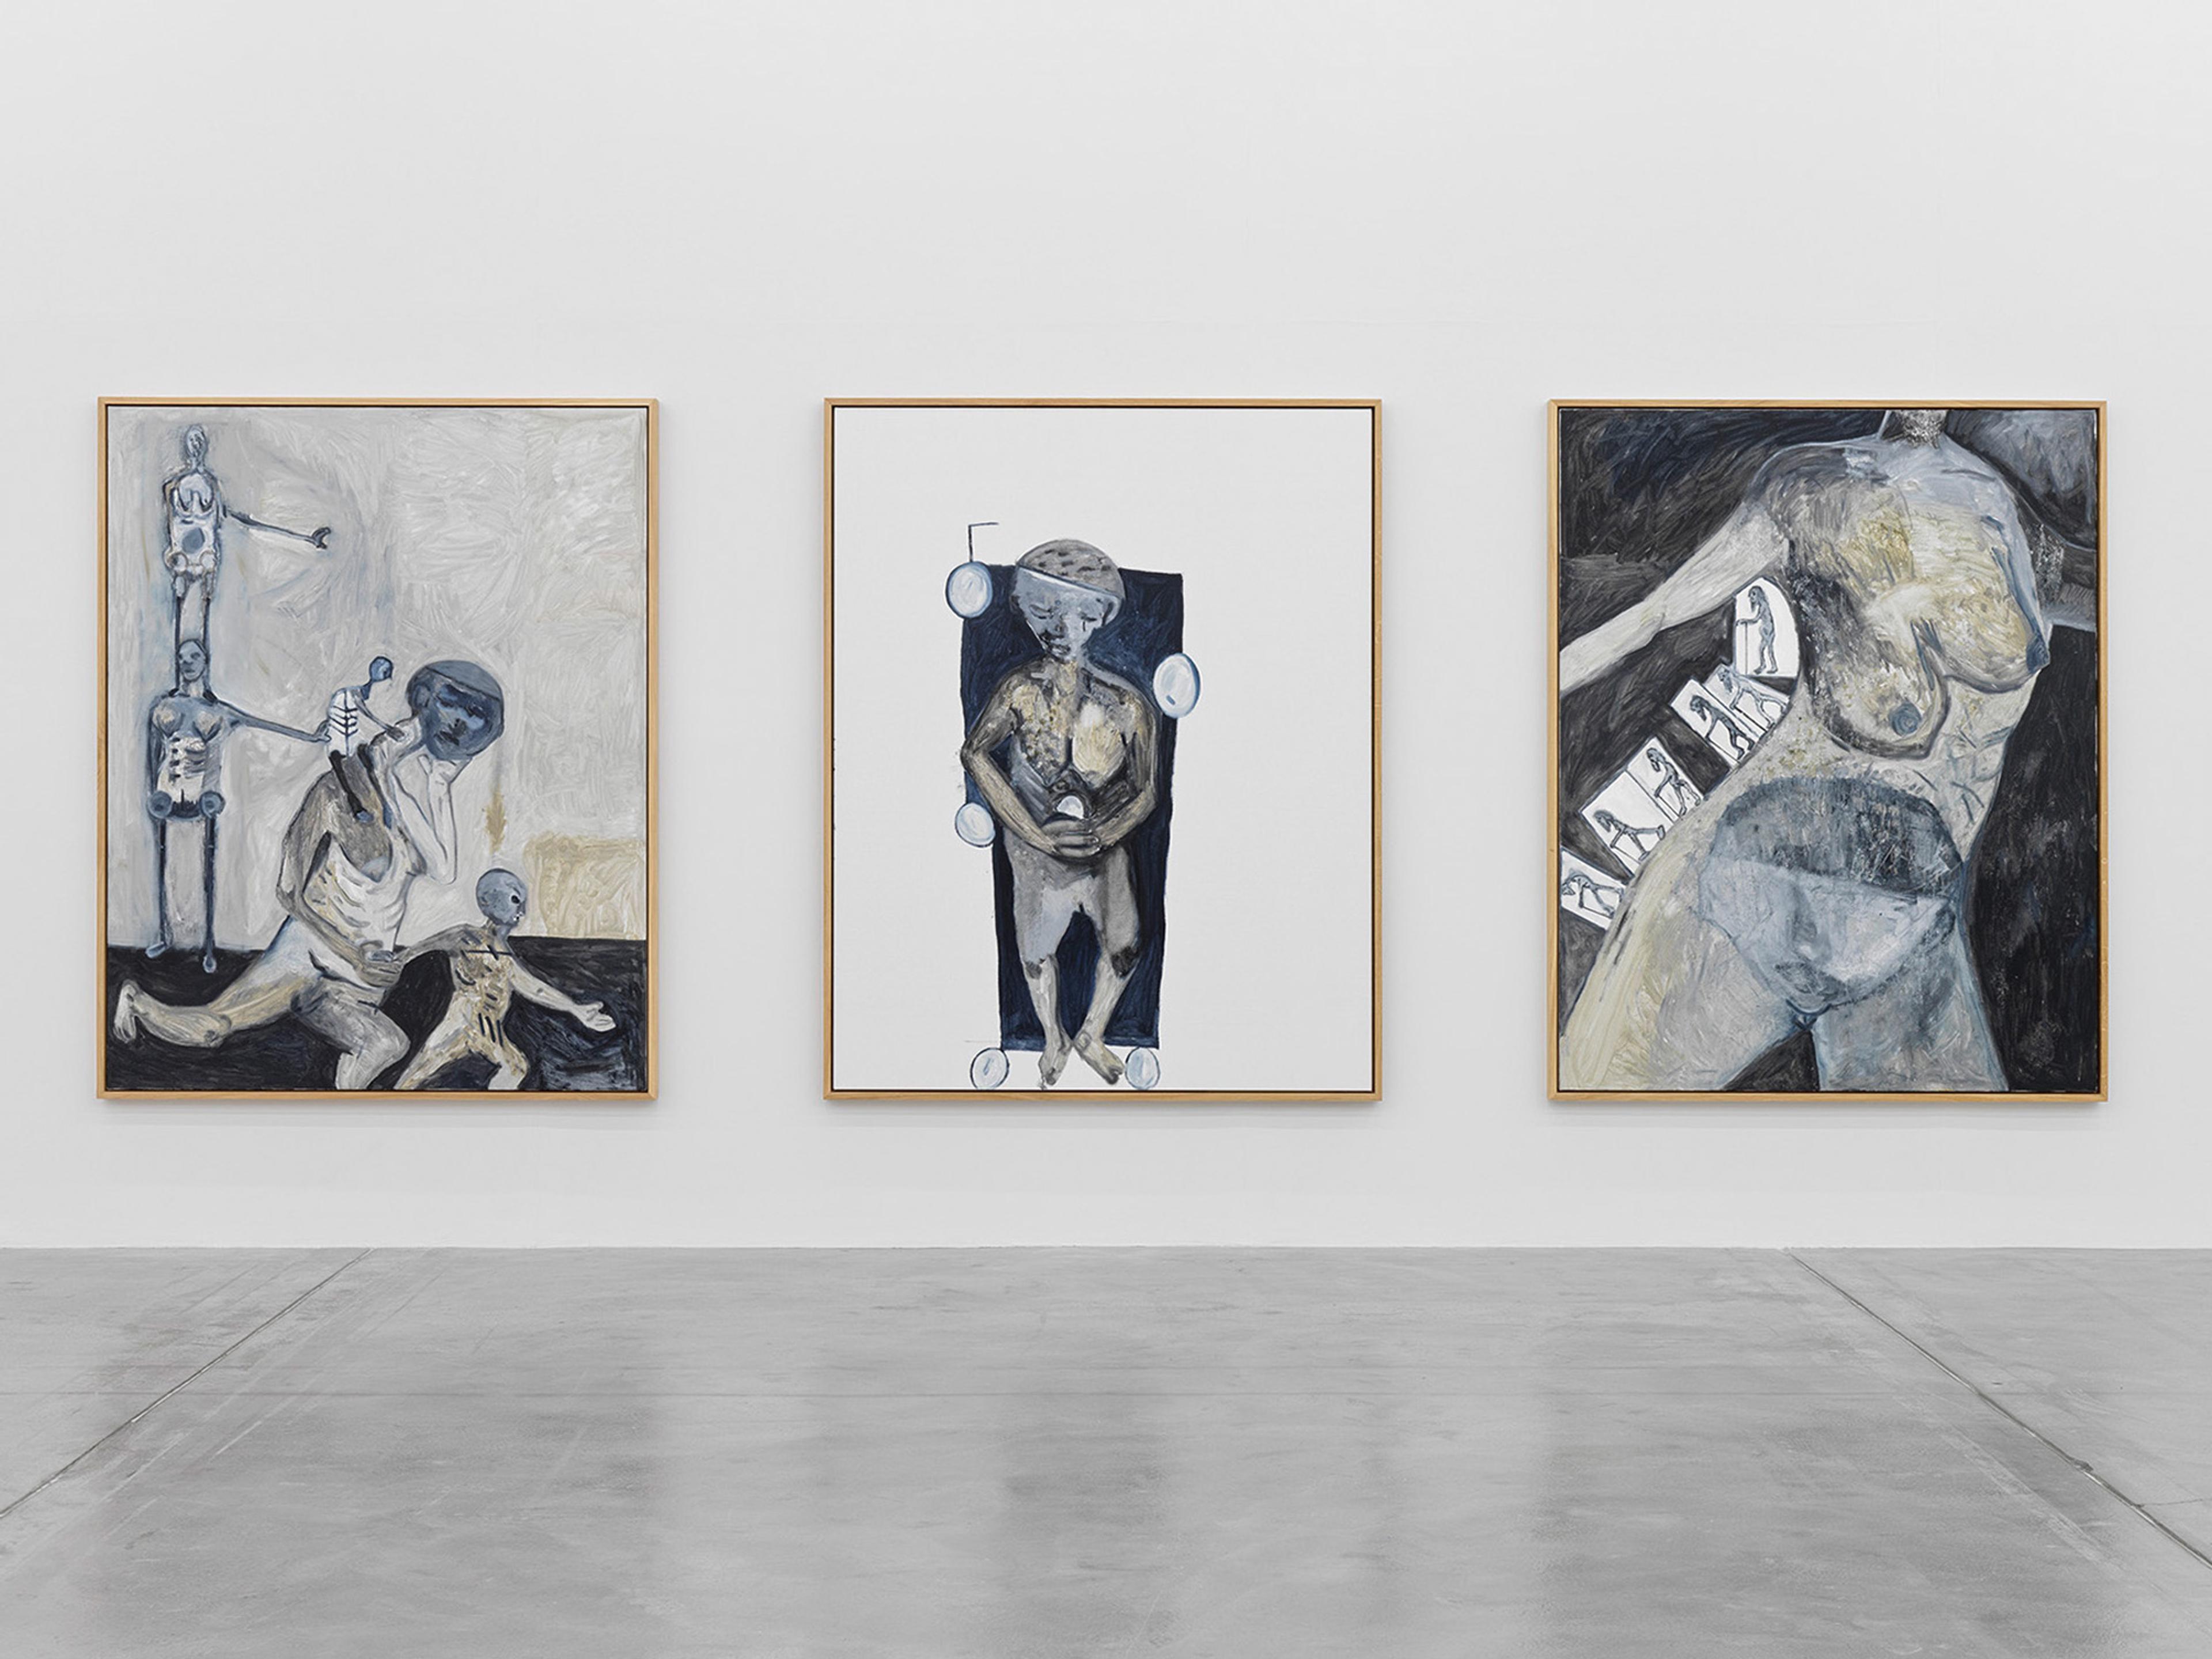 View of Tobias Pils, “Happy Days,” Galerie Eva Presenhuber, Zurich